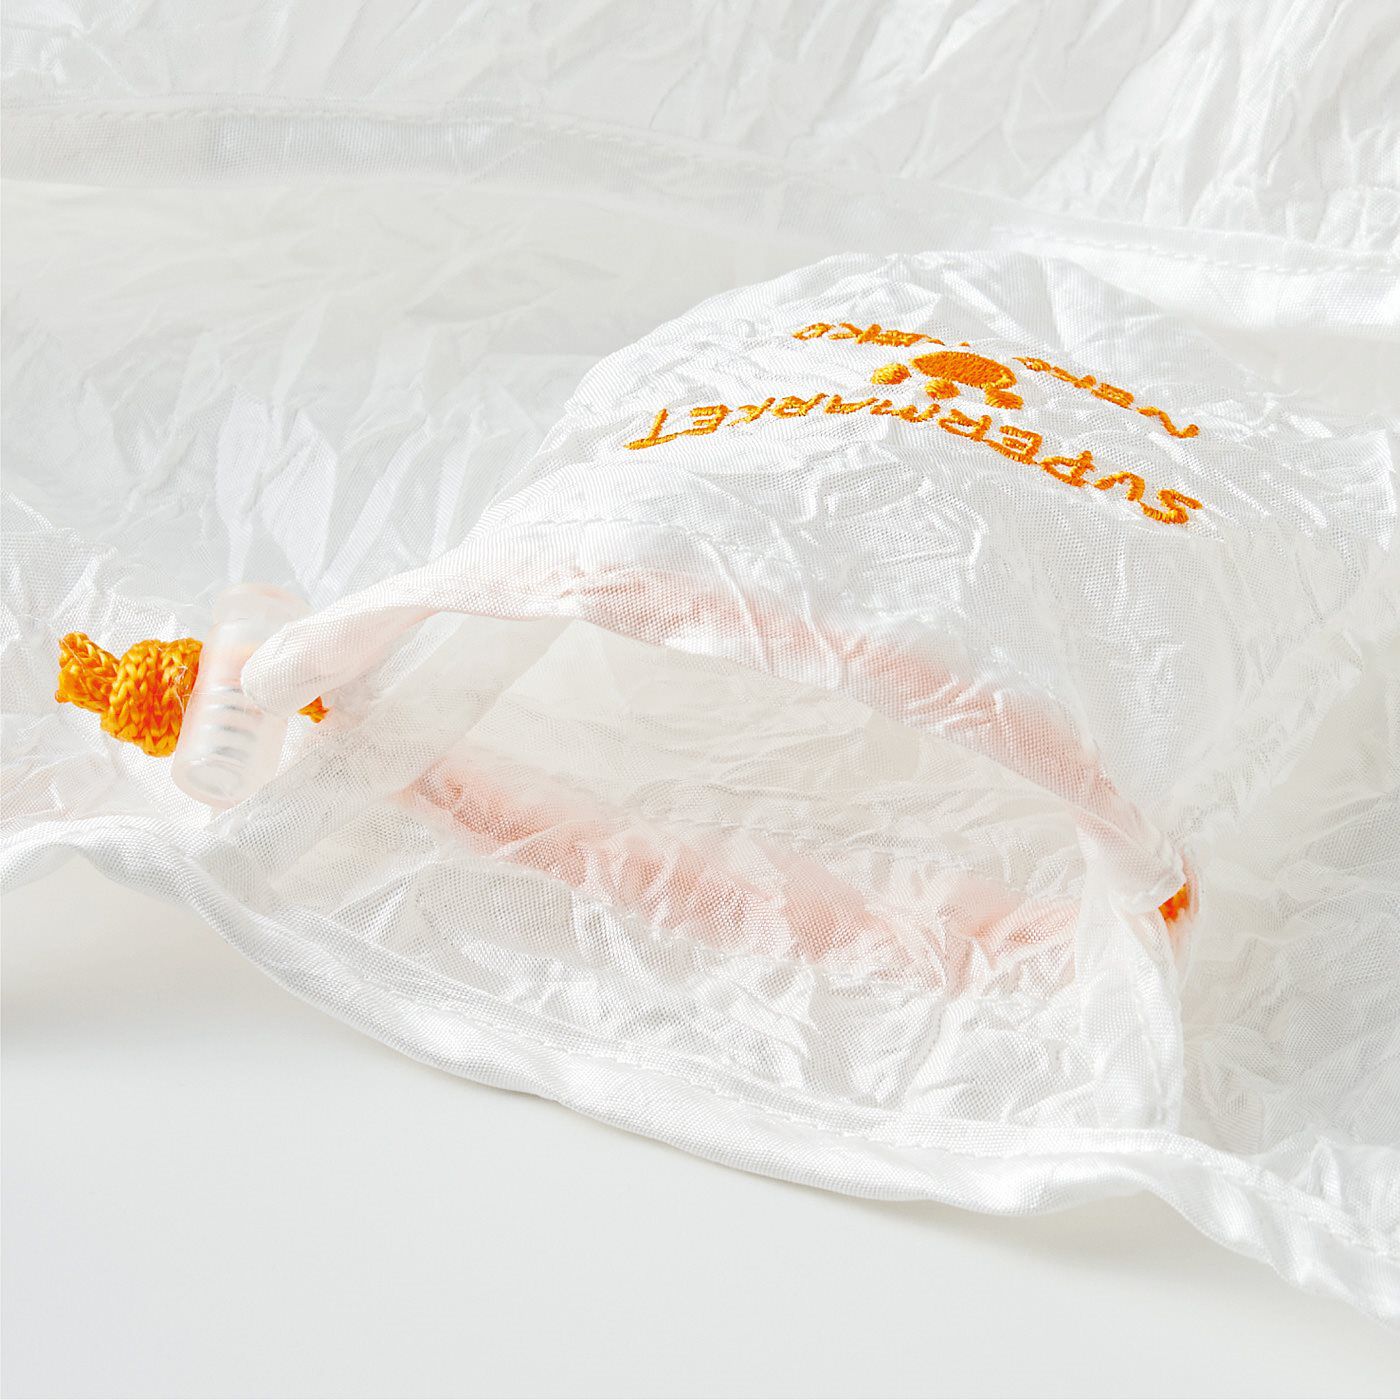 Real Stock|995さんとコラボ　５秒でたためる 猫さんのお買い物エコバッグ|内側に収納袋にもなるポケット付き。 ※カラーは〈3. オレンジ〉です。